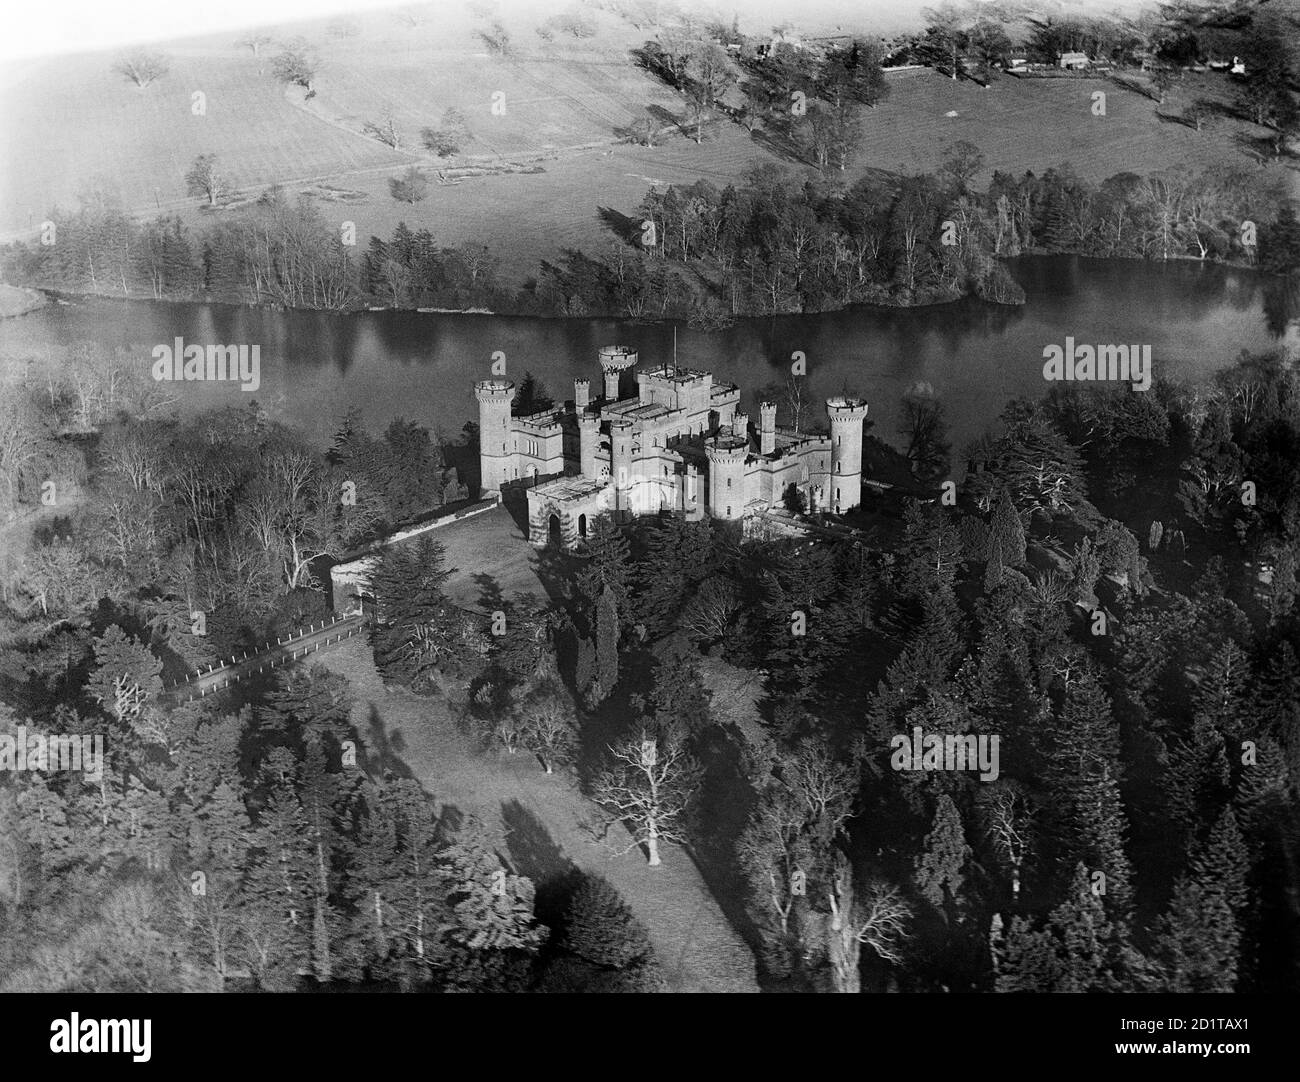 EASTNOR CASTLE, vicino a Ledbury, Herefordshire. Veduta aerea del Castello di Eastnor, costruito nel 1812-20 da Robert Smirke per apparire come un castello medievale. Fotografato nel marzo 1921. Aerofilms Collection (vedi link). Foto Stock